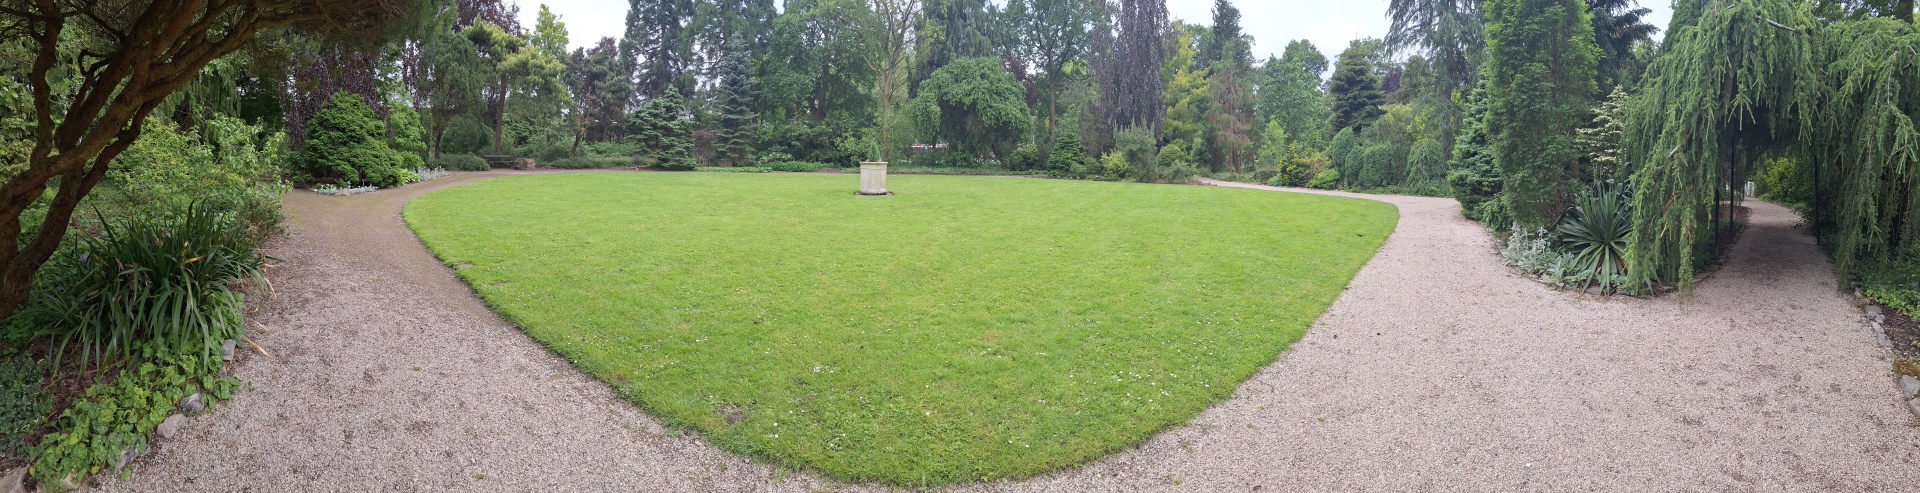 Een groen veld omringd door een cirkelvormig pad. In het midden staat een stenen sokkel zonder beeld. Geen van de paden naar het plein maken een lijn naar het midden.